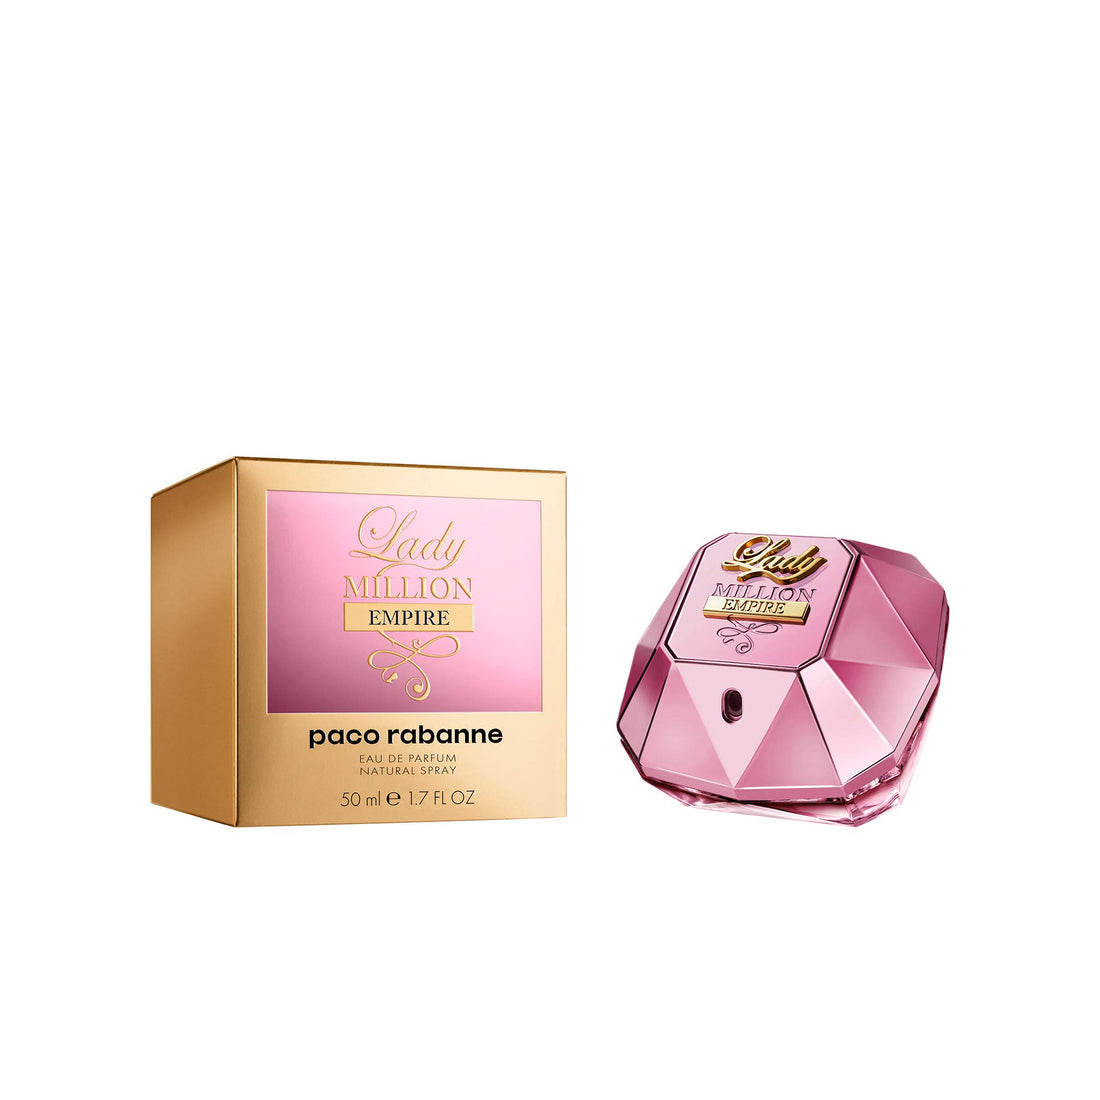 Paco Rabanne - Lady Million Empire Eau De Parfum Vaporisateur 50 Ml